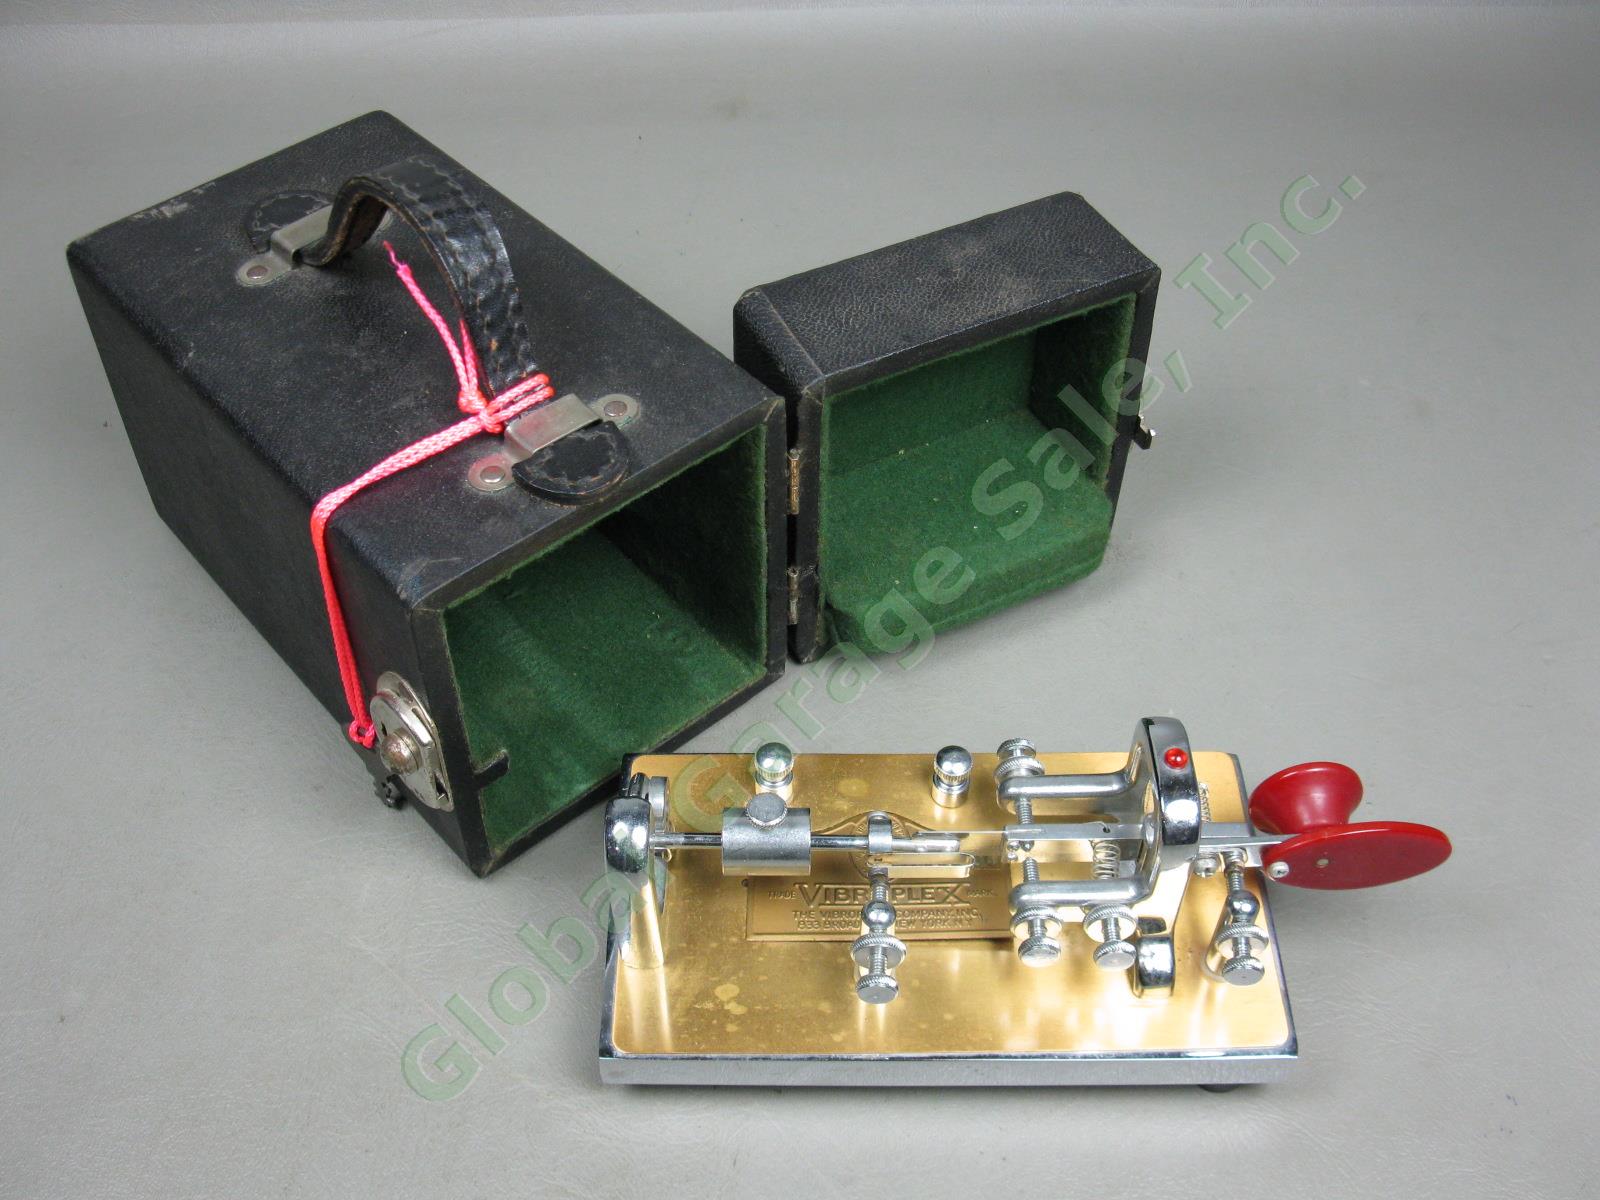 Vibroplex Super Deluxe Presentation Telegraph Key Morse Code Bug +Case 388604 NR